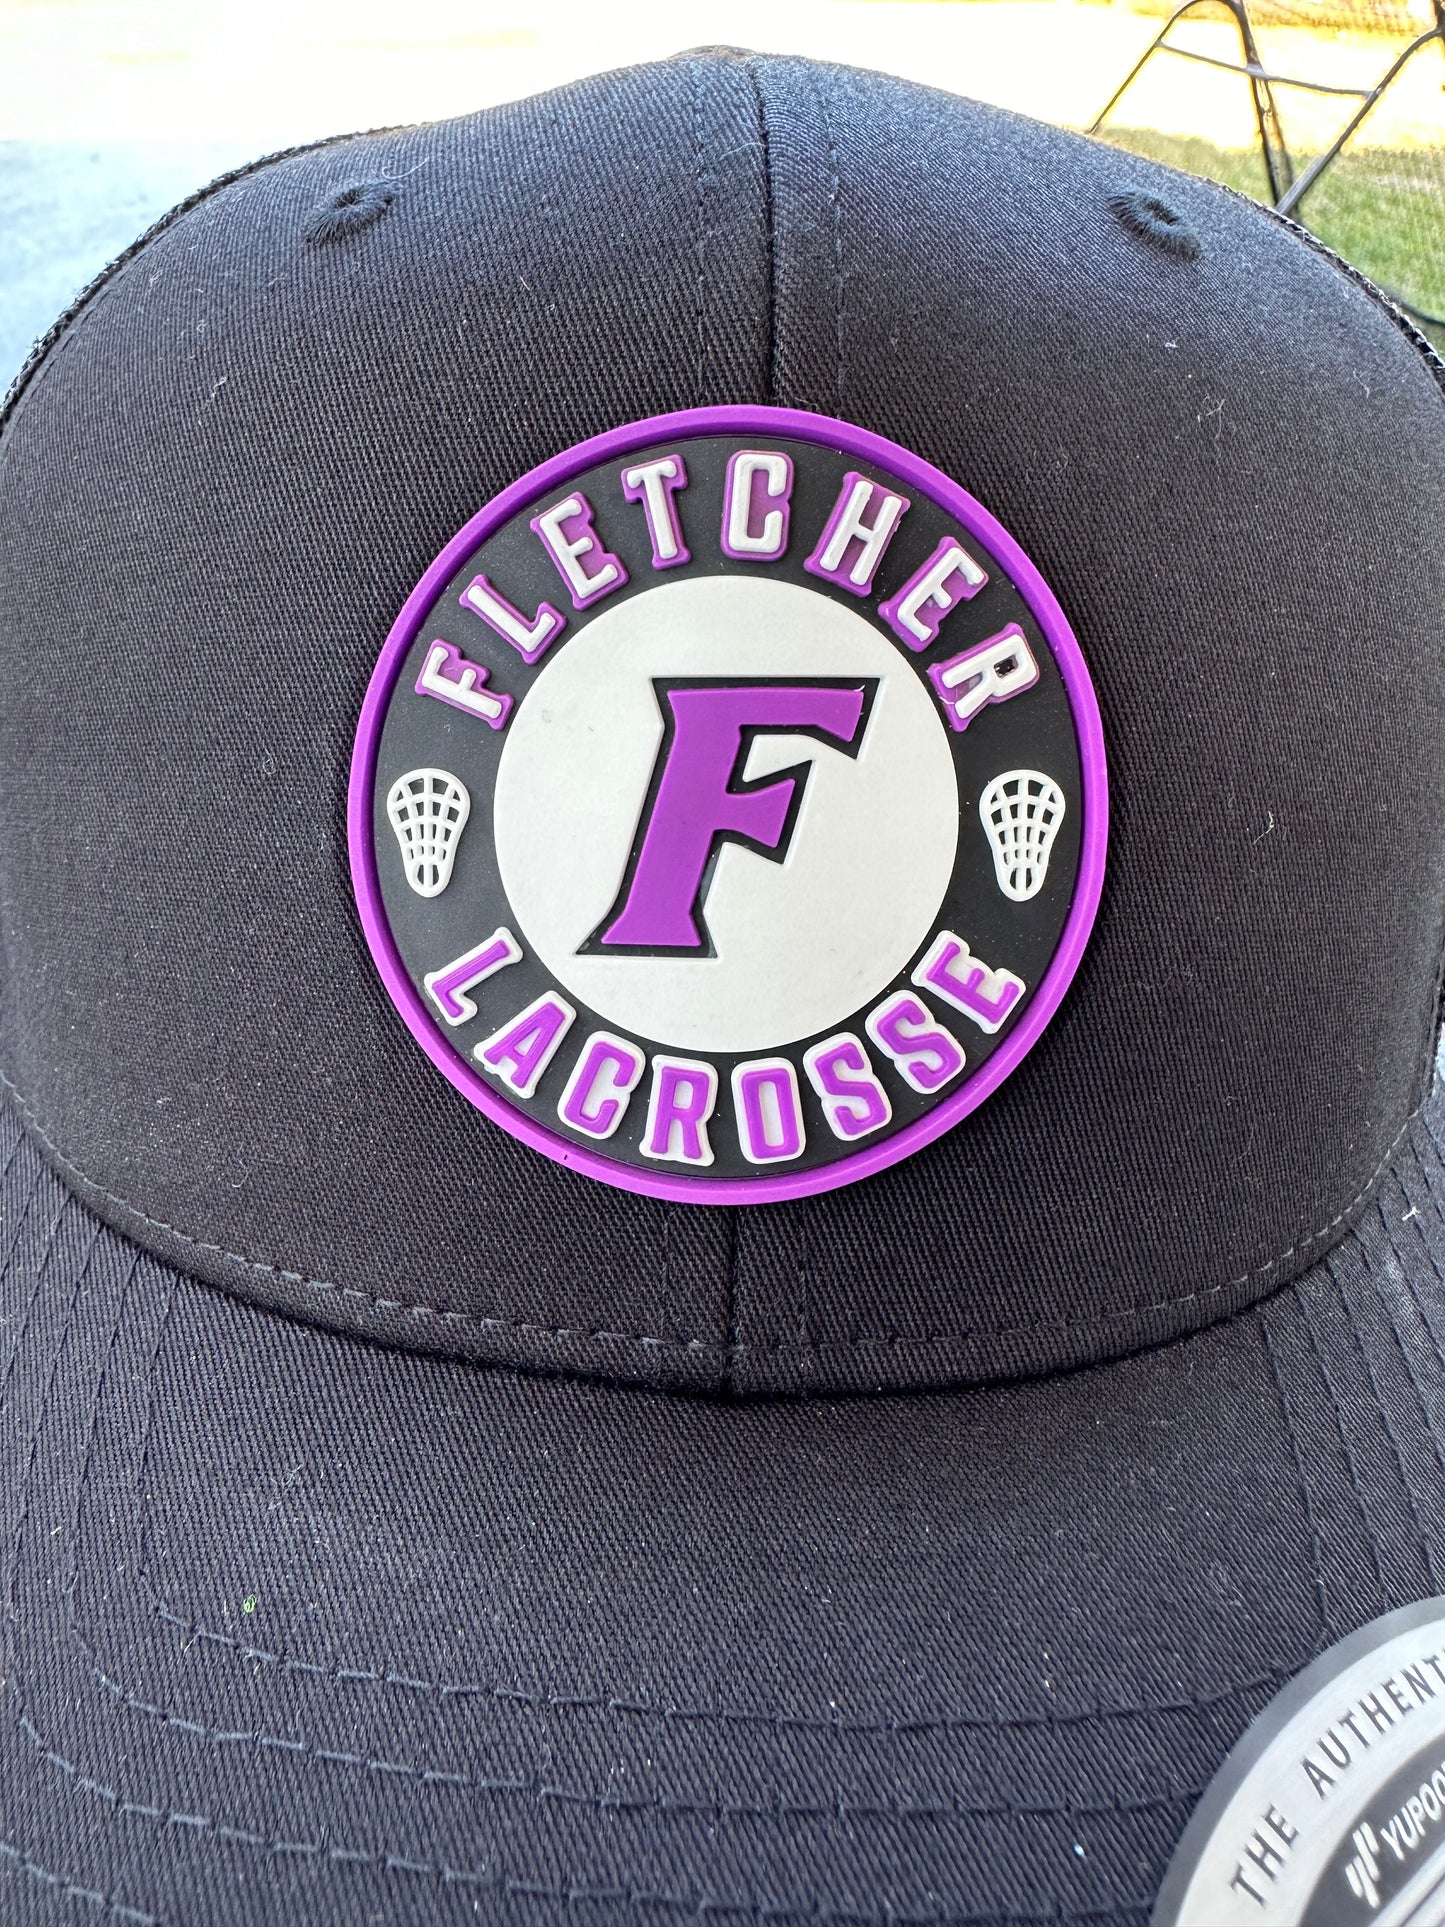 Fletcher Lacrosse Rubber Patch Trucker Hat